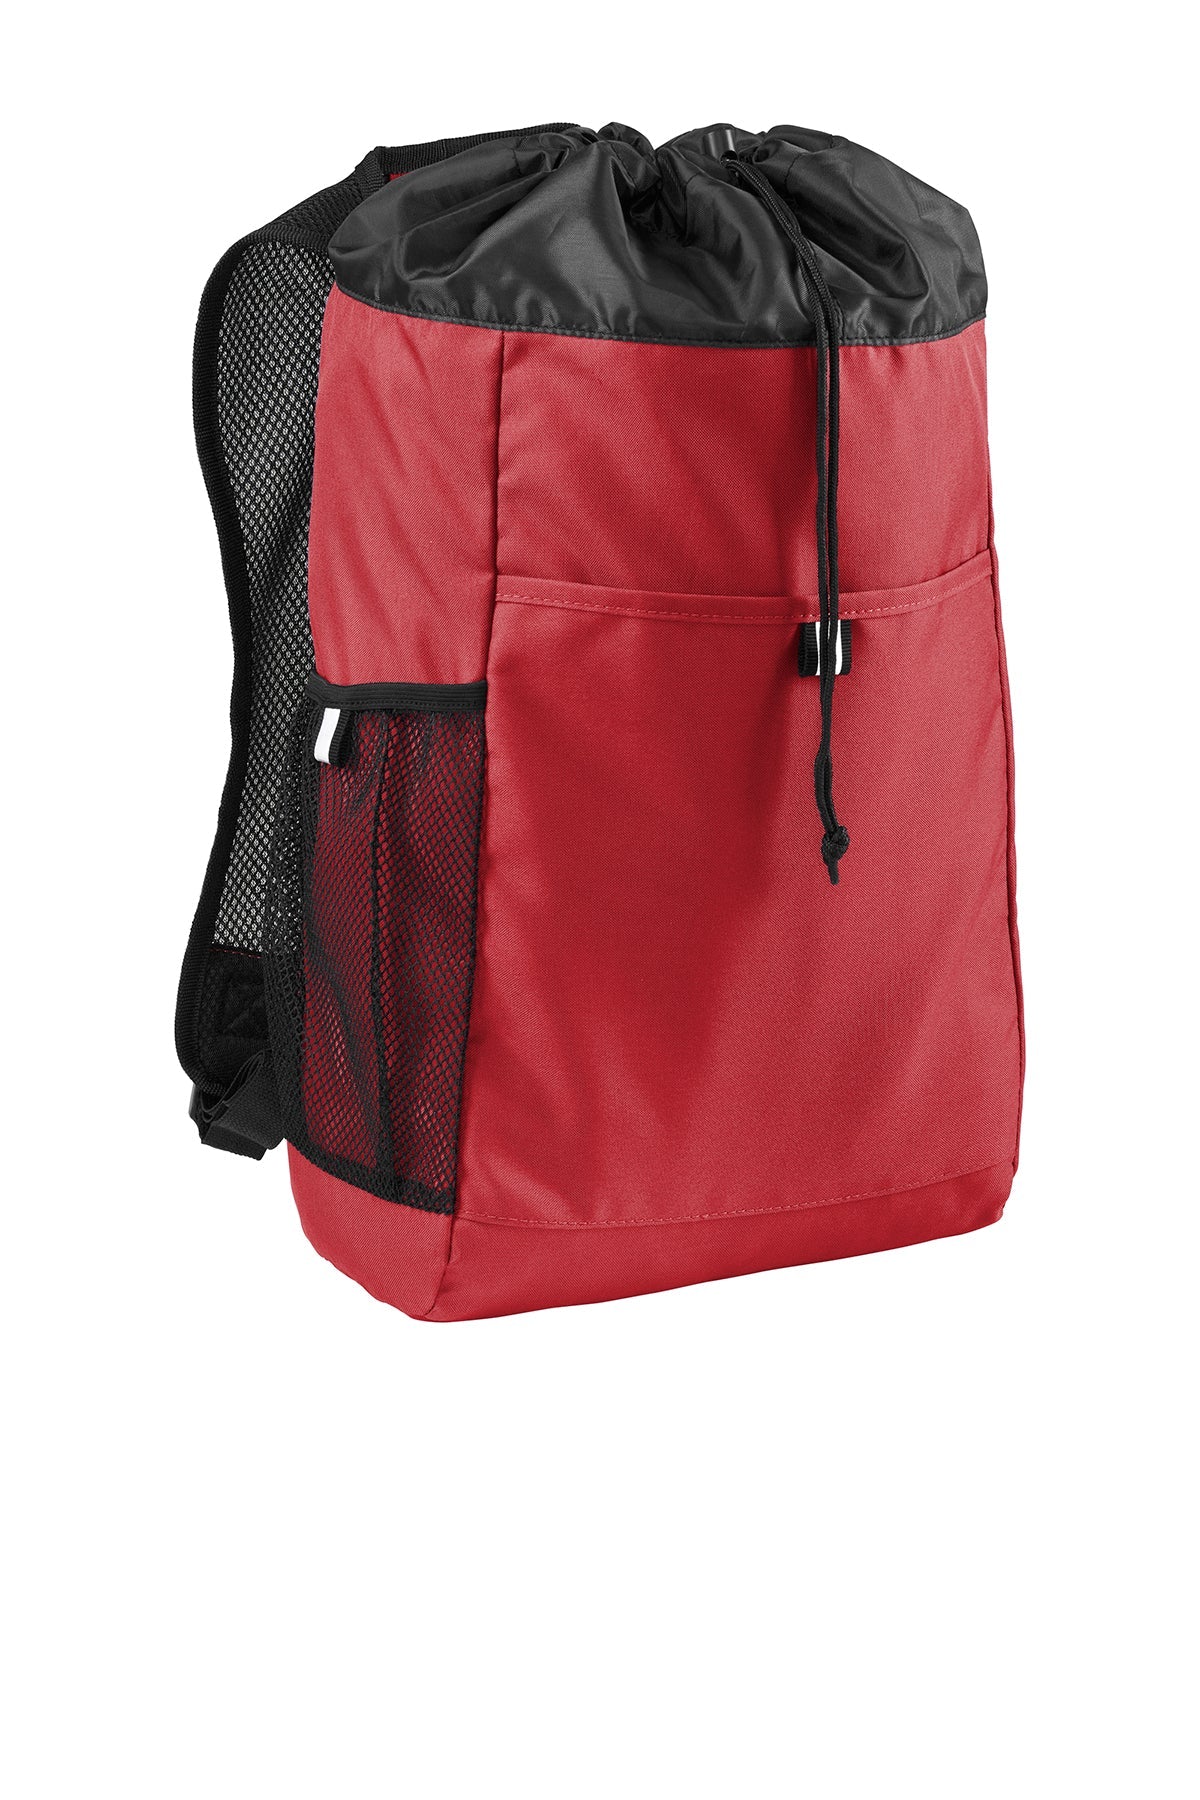 BG211 Port Authority ® Hybrid Backpack